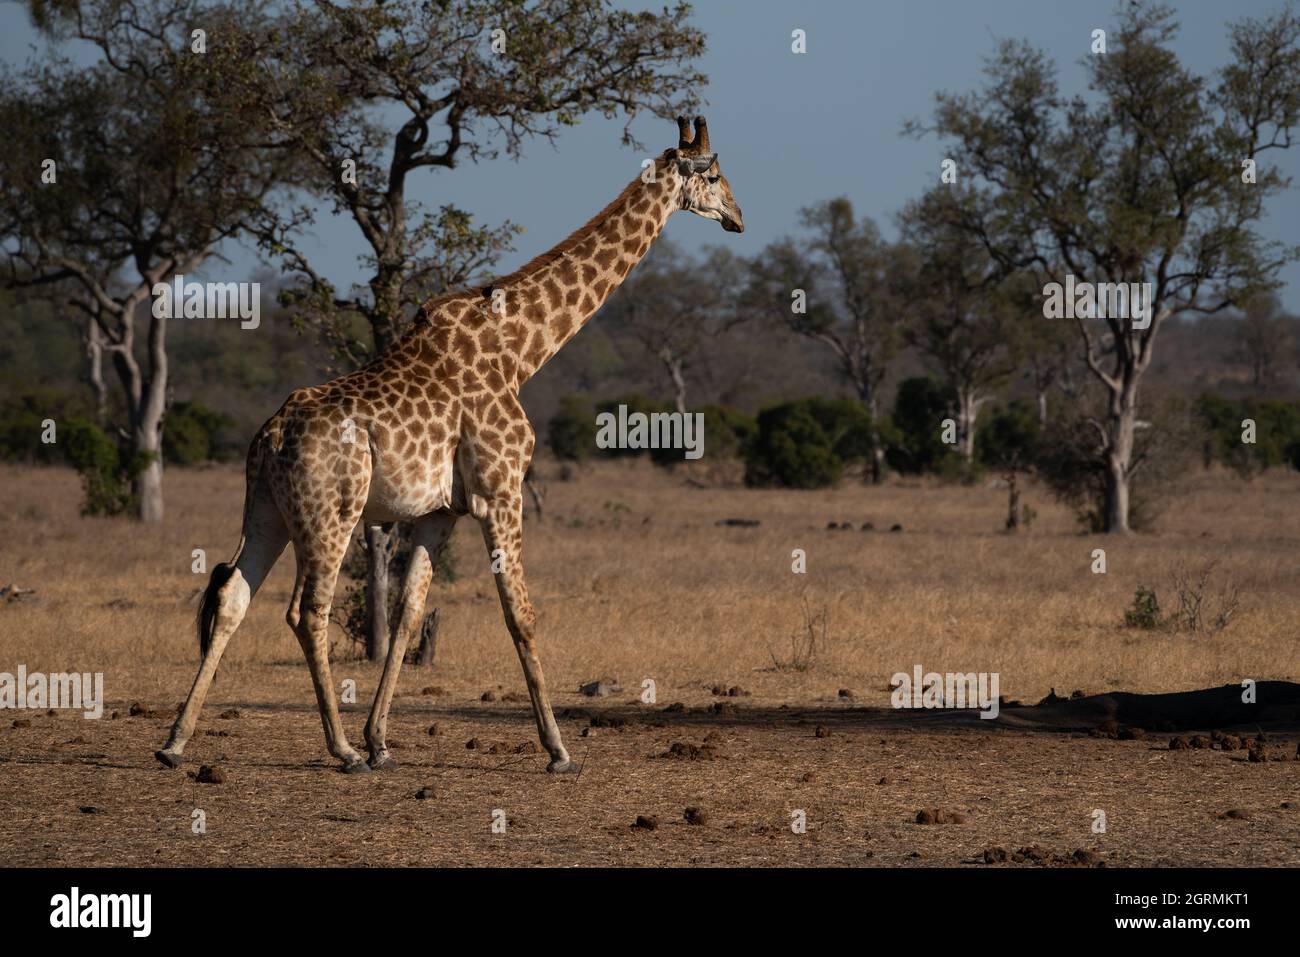 A male giraffe striding across an open area near a waterhole Stock Photo